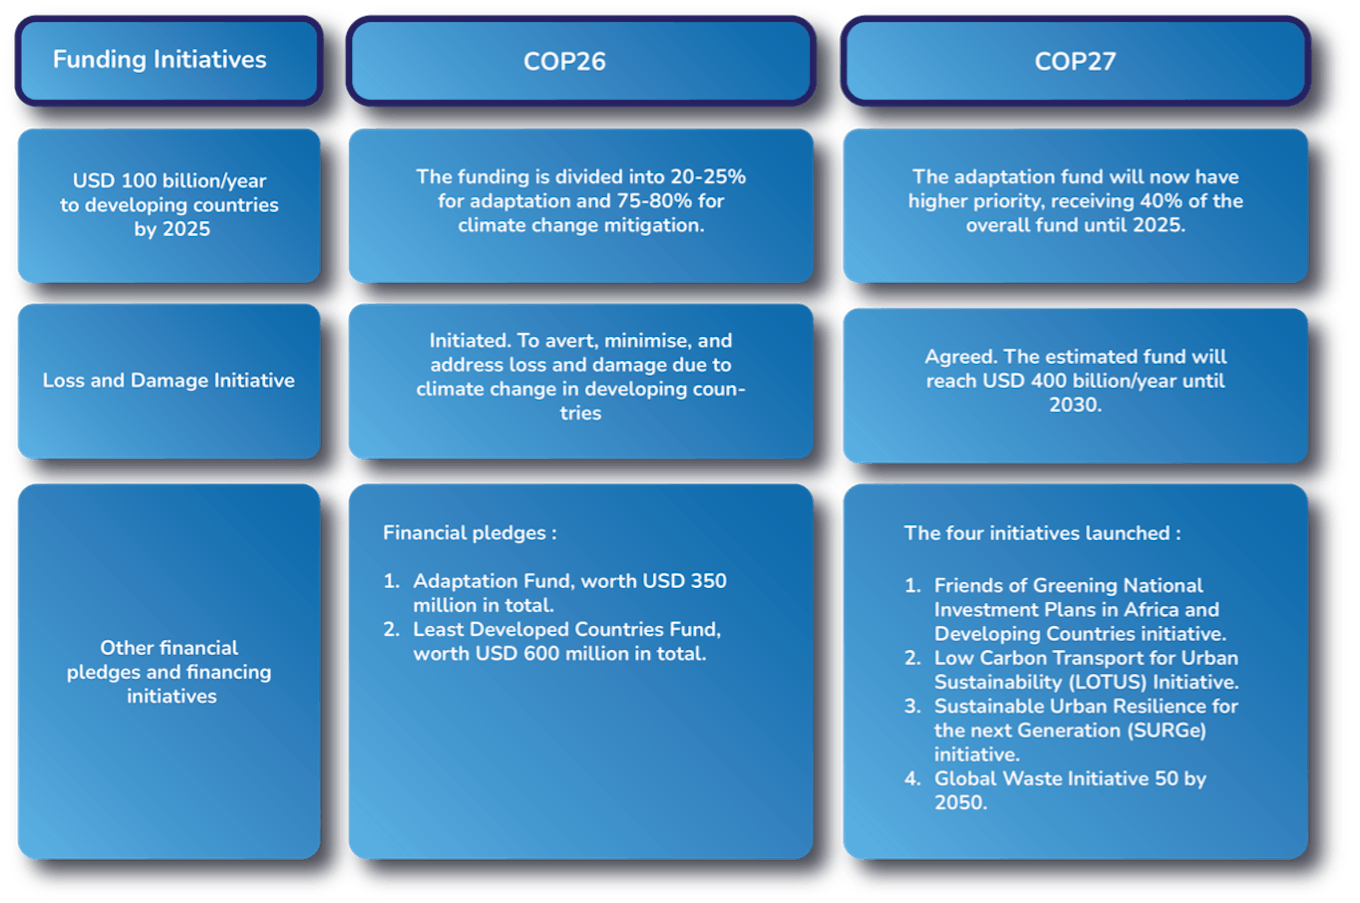 Funding comparison between COP26 and COP27